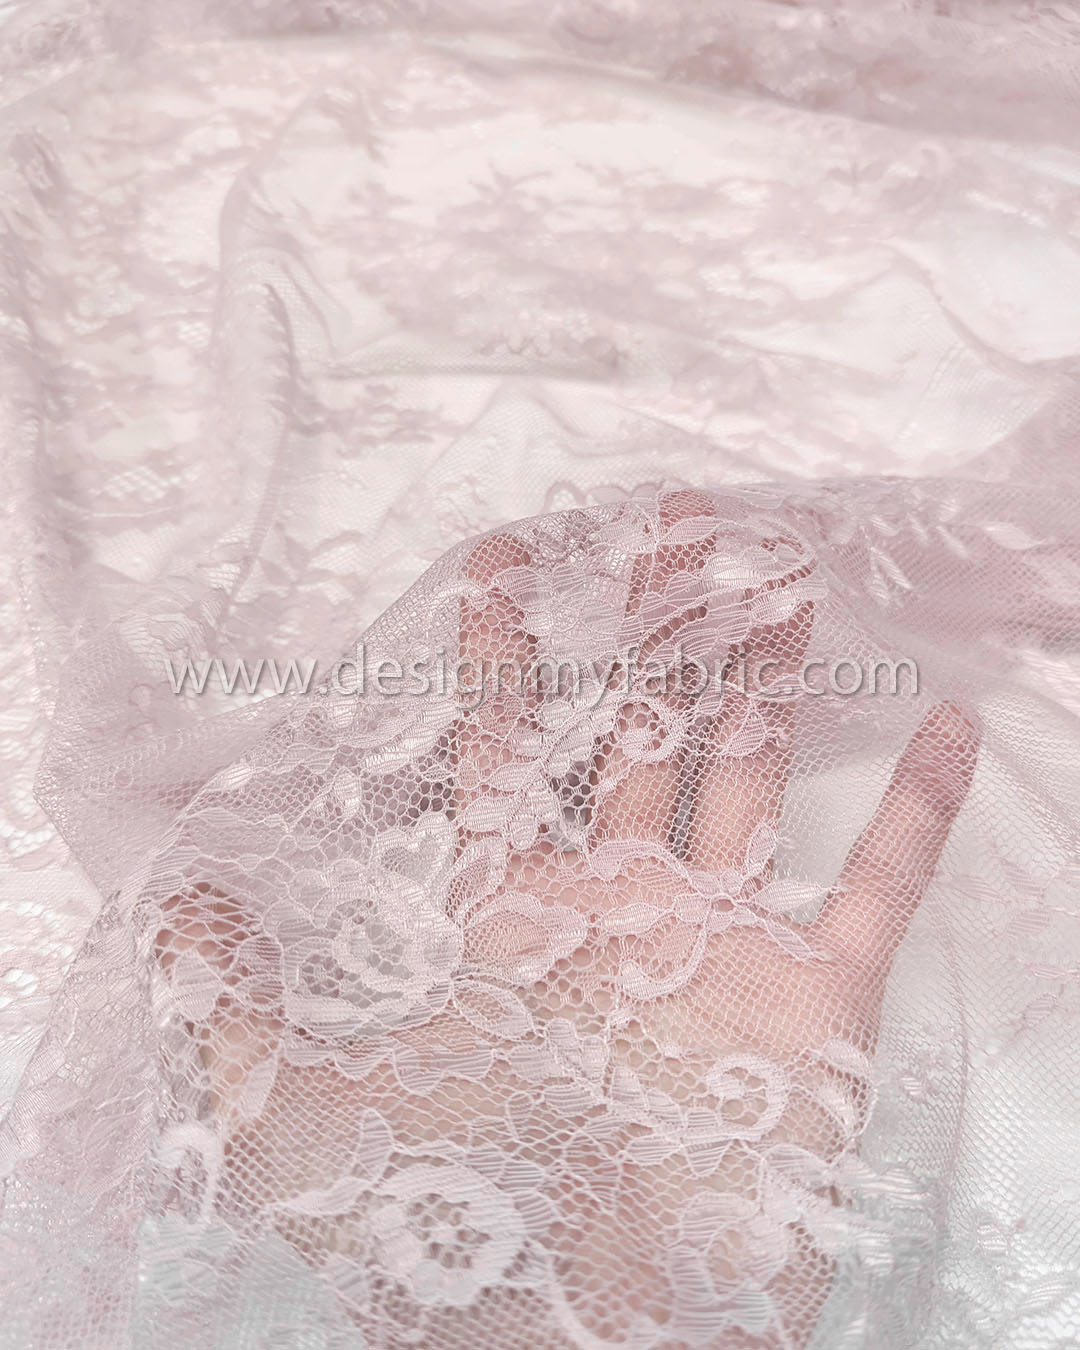 1043822-1080684-F Modern Lace Covered LL Balc:Parisian Pink CSI0301061:42C